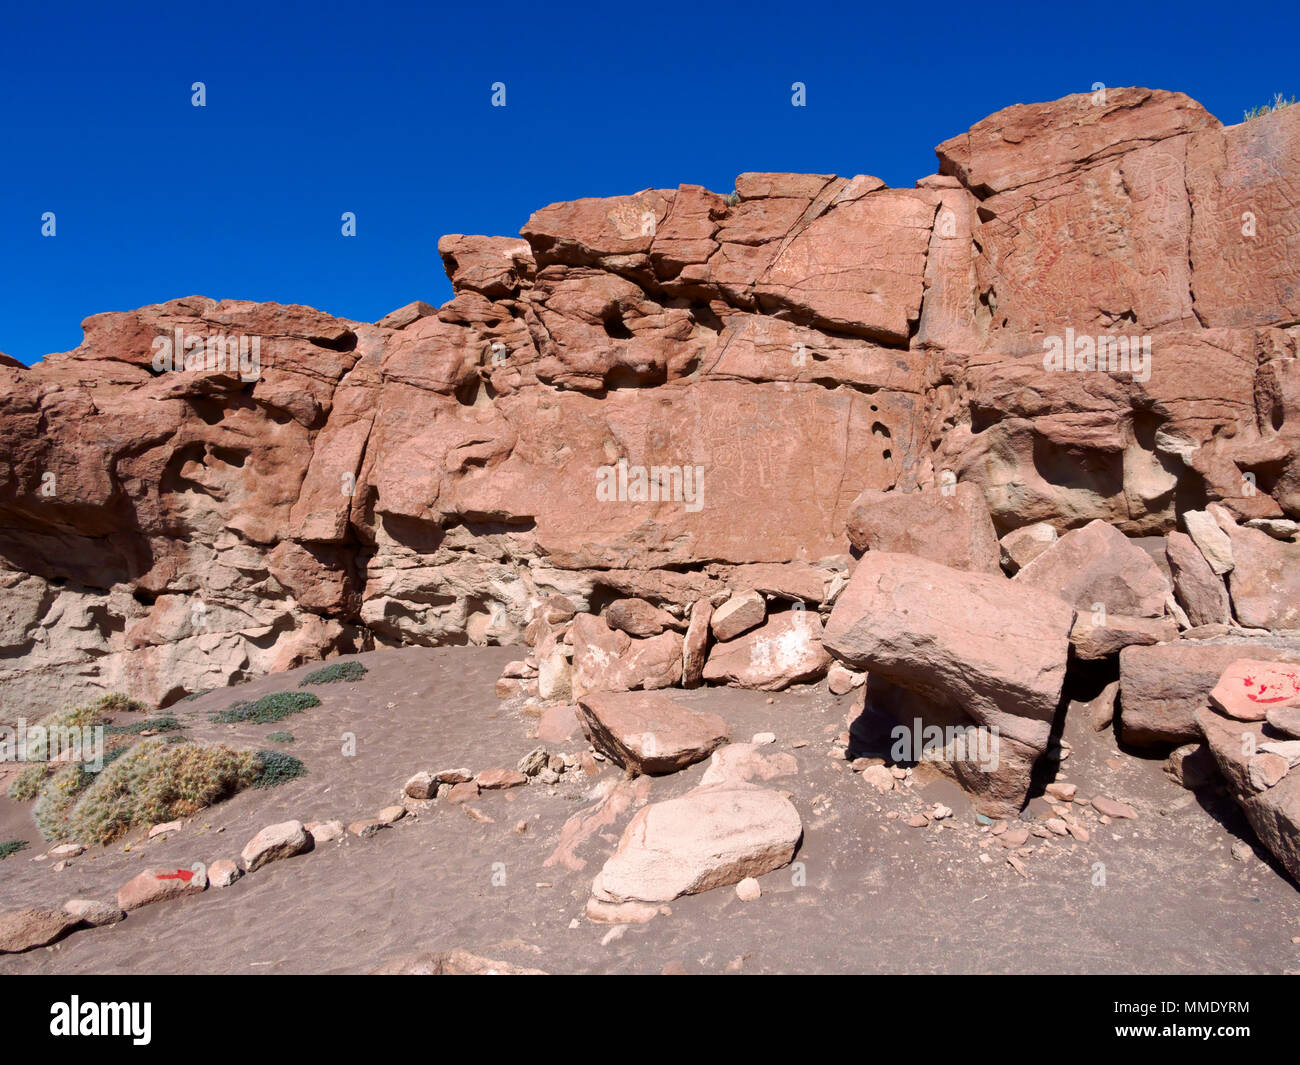 Yerbas Buenas, pétroglyphes, Désert d'Atacama, au Chili. Mur du chevauchement des pictogrammes connu comme El Muro. Banque D'Images